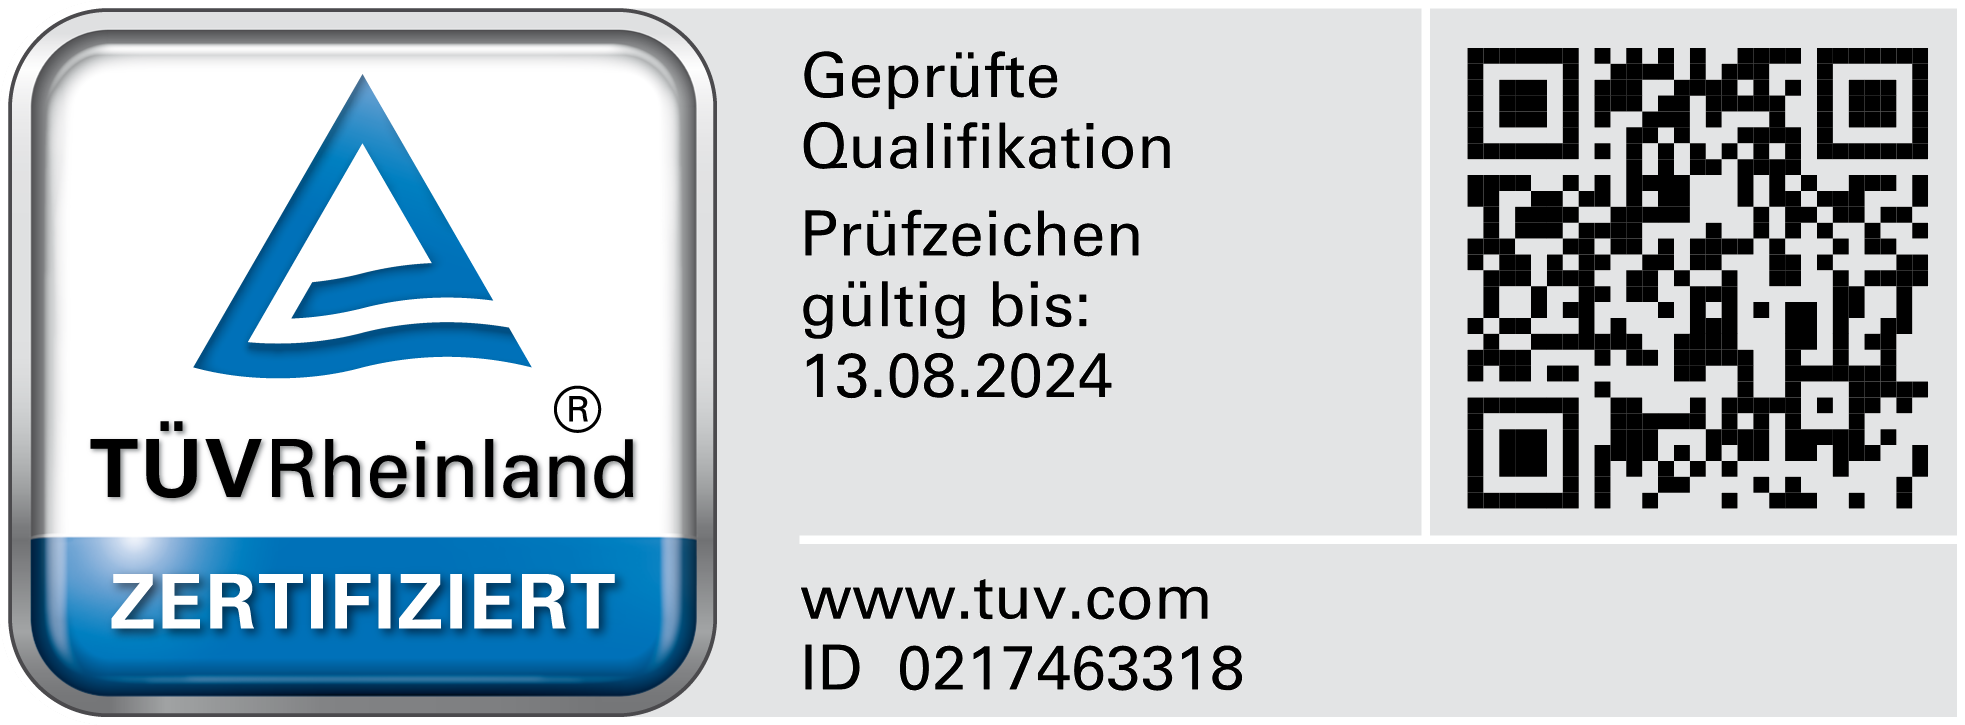 Tobias Diekmann - TPV Rheinland zertifiziert